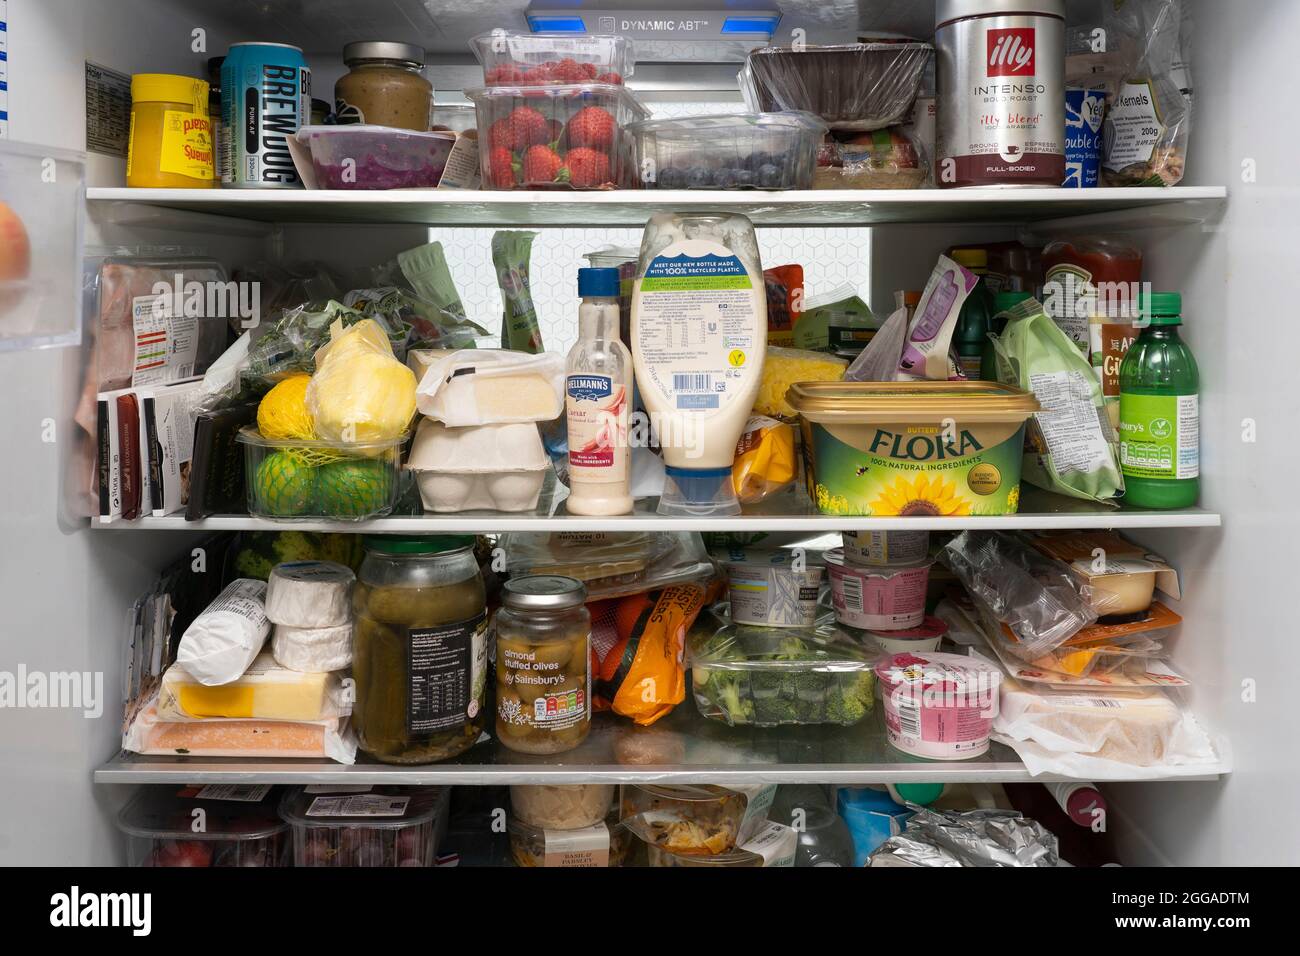 L'interno di un frigorifero britannico con scaffali riempiti con una selezione di frutta fresca e verdure, condimenti, salse, burro, uova e alcol. Foto Stock